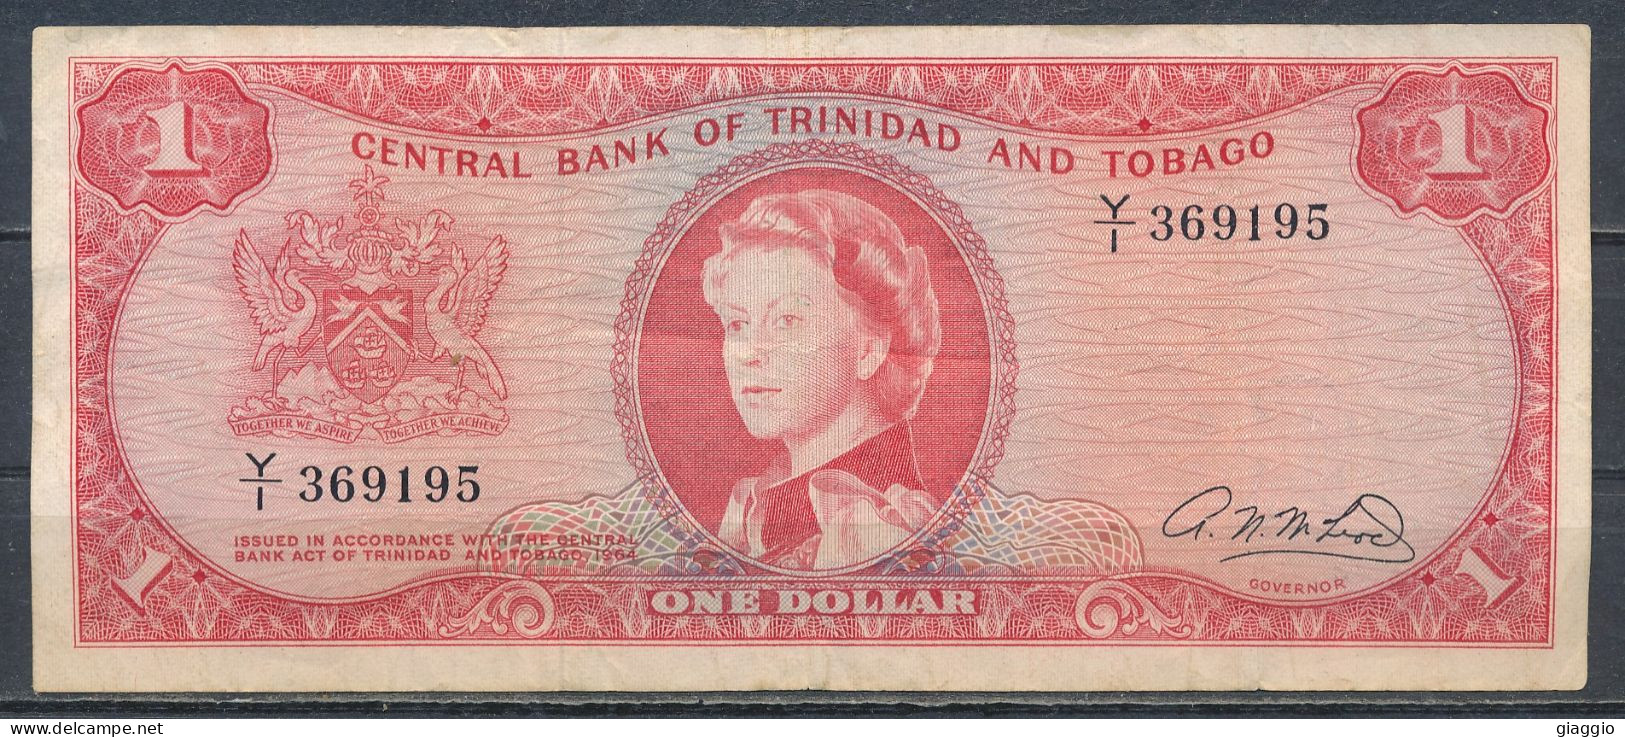 °°° TRINIDAD & TOBAGO 1 DOLLAR 1964 °°° - Trinidad Y Tobago